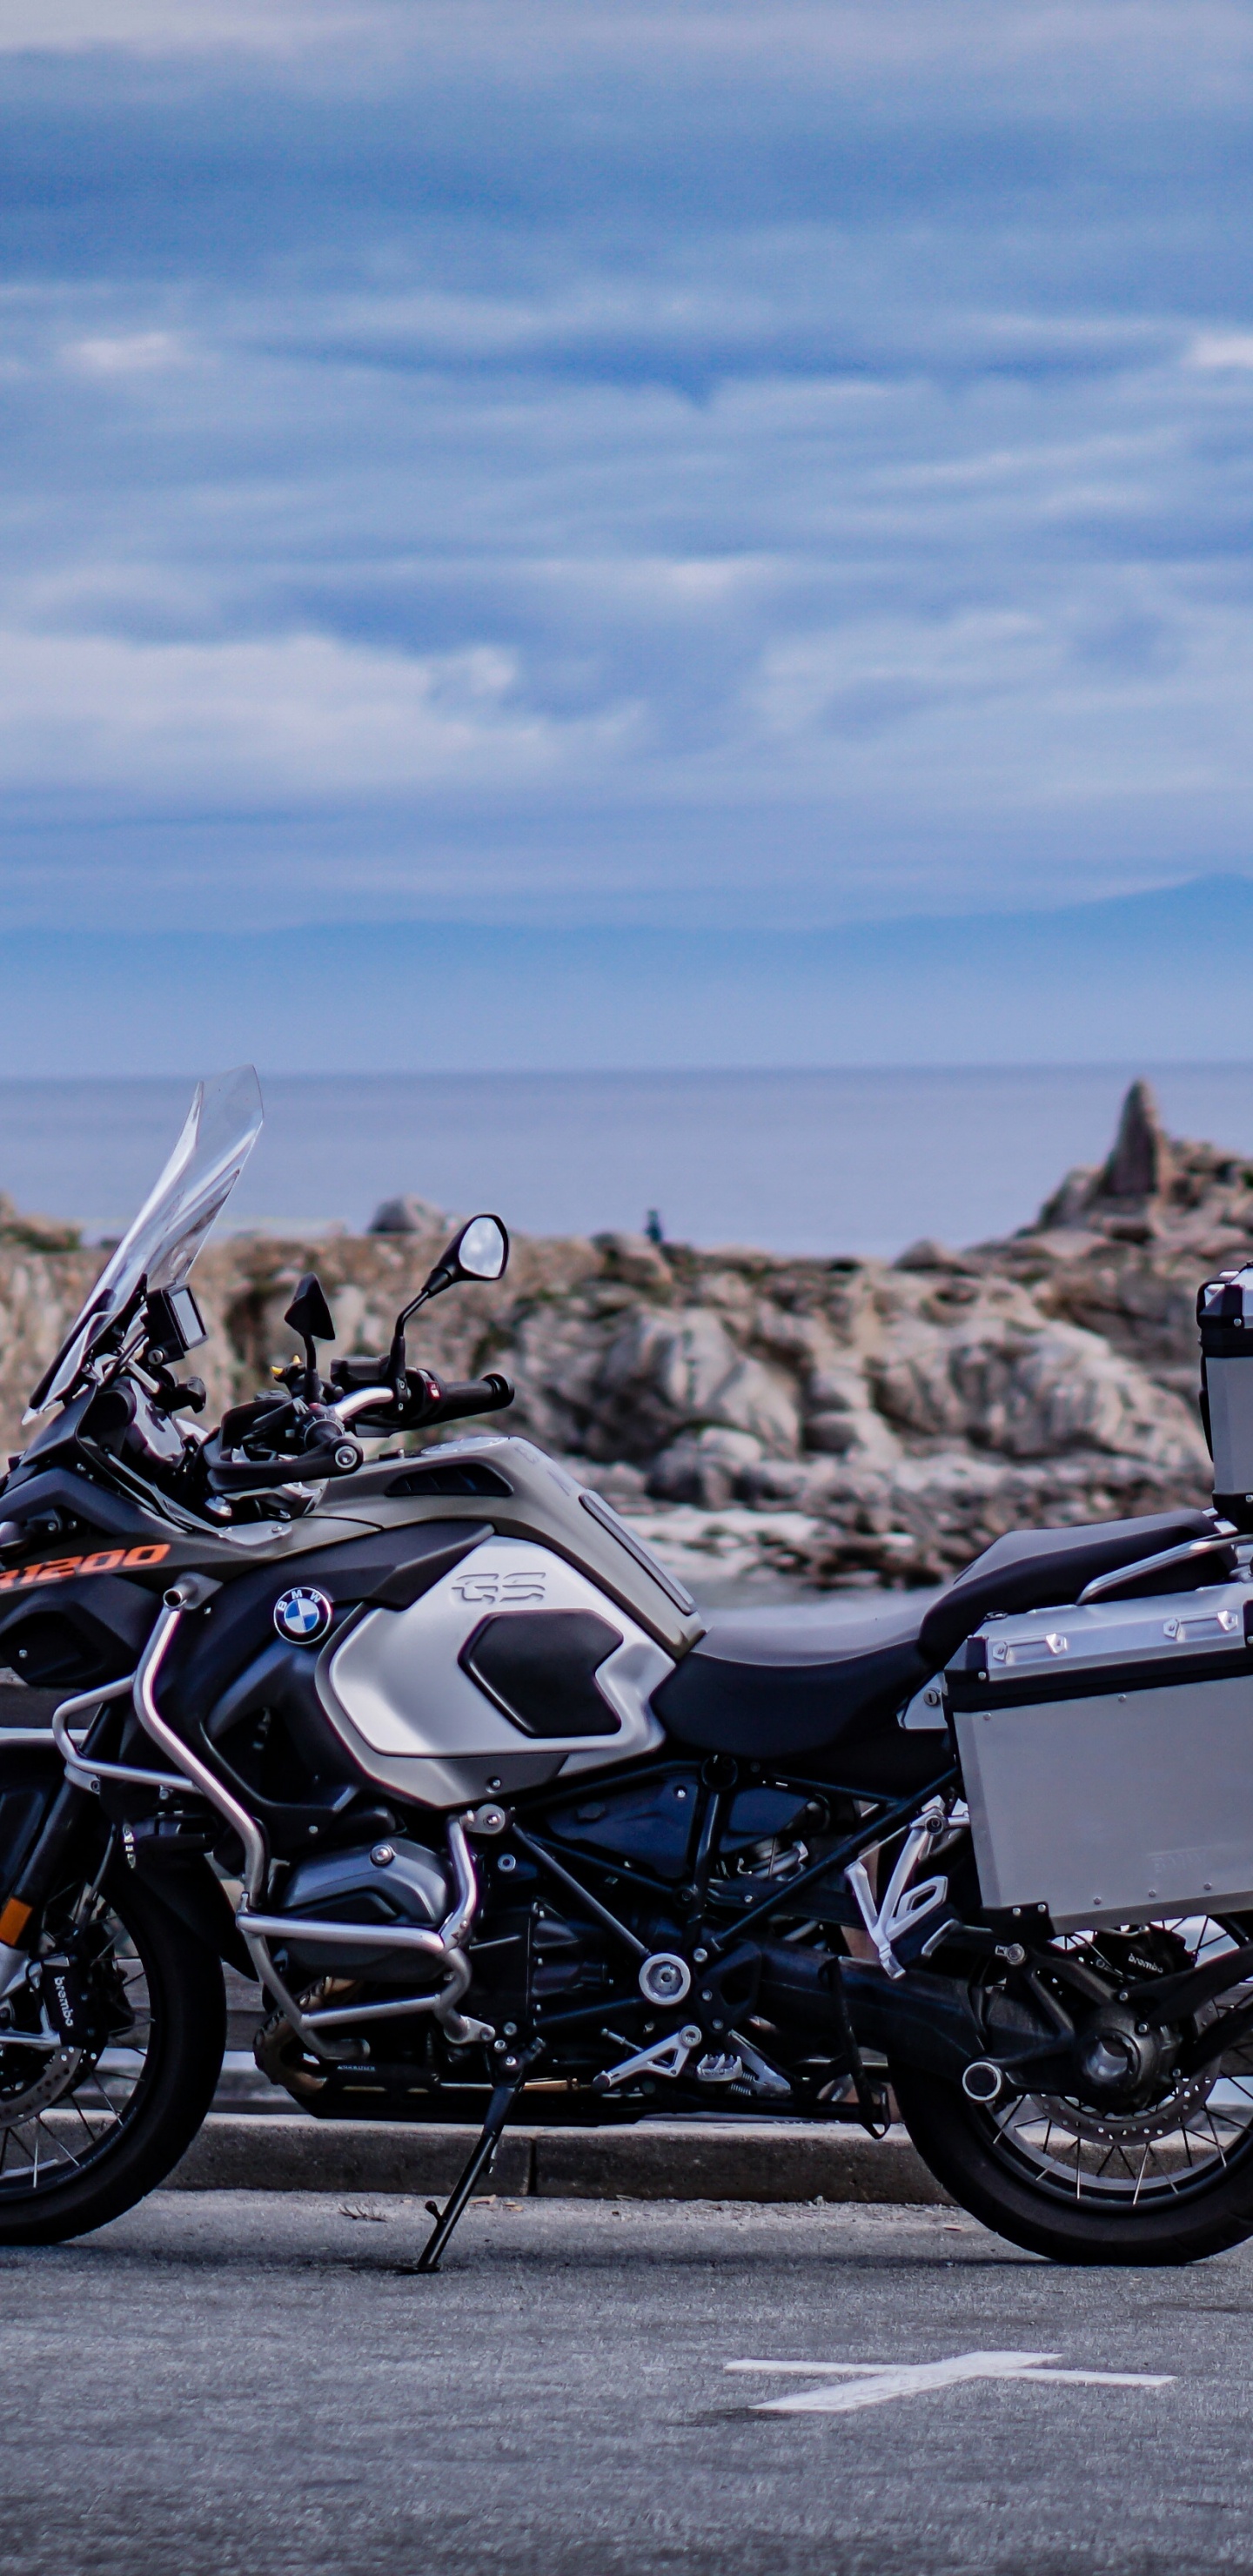 Обои мотоцикл, туристический мотоцикл, велосипед, авто, море мотоциклов в разрешении 1440x2960